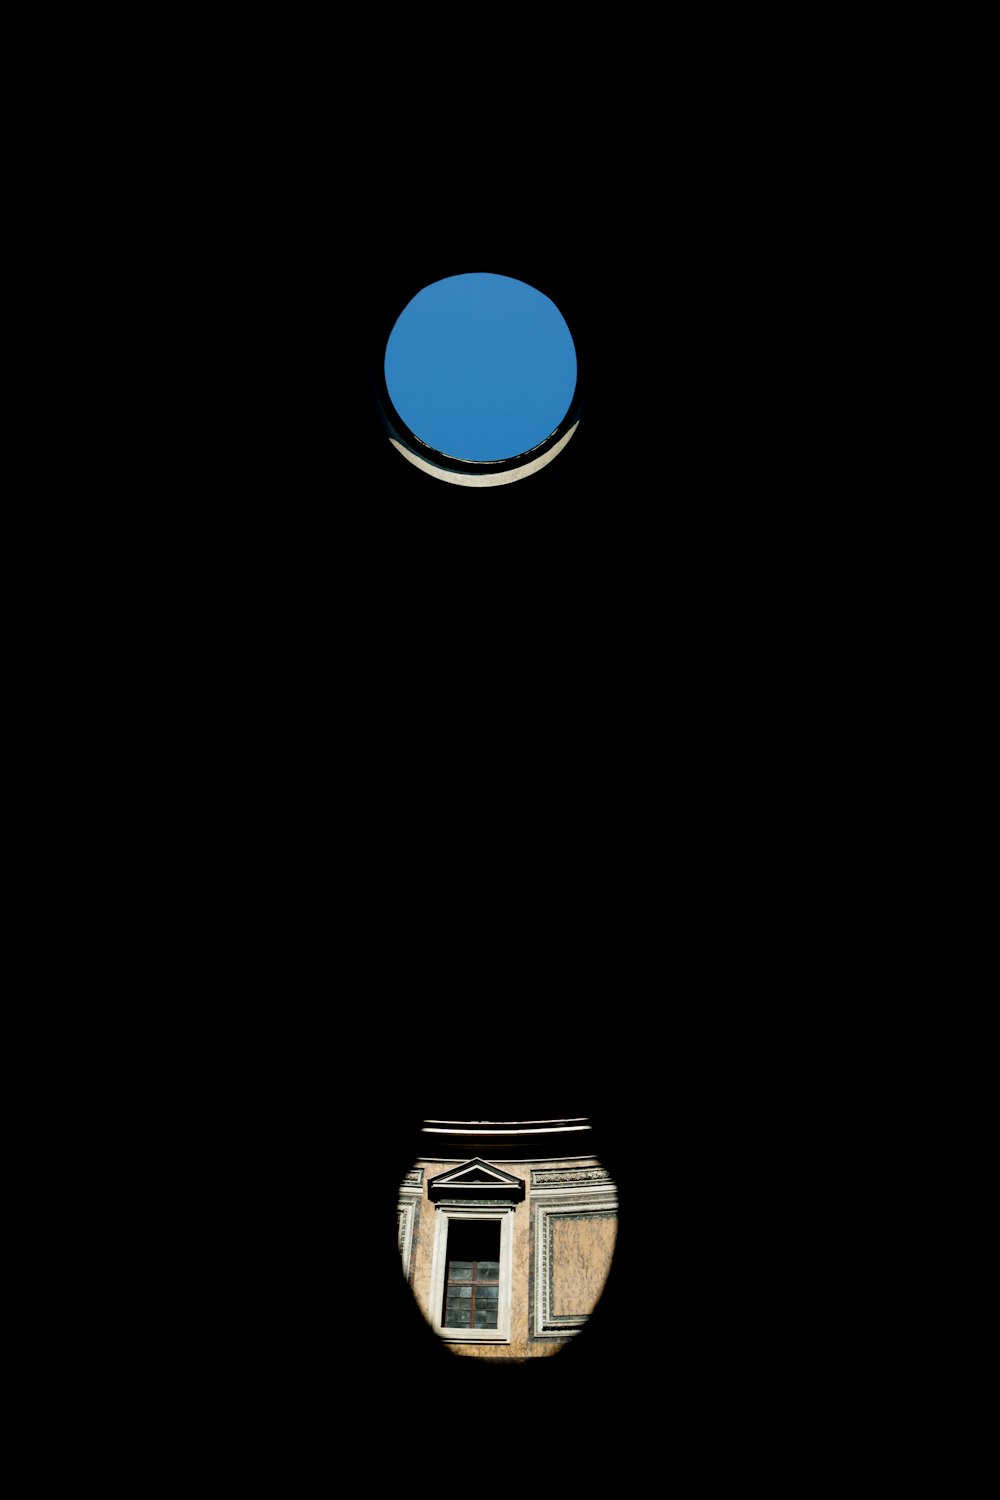 punto blu sopra l'illustrazione del vaso marrone